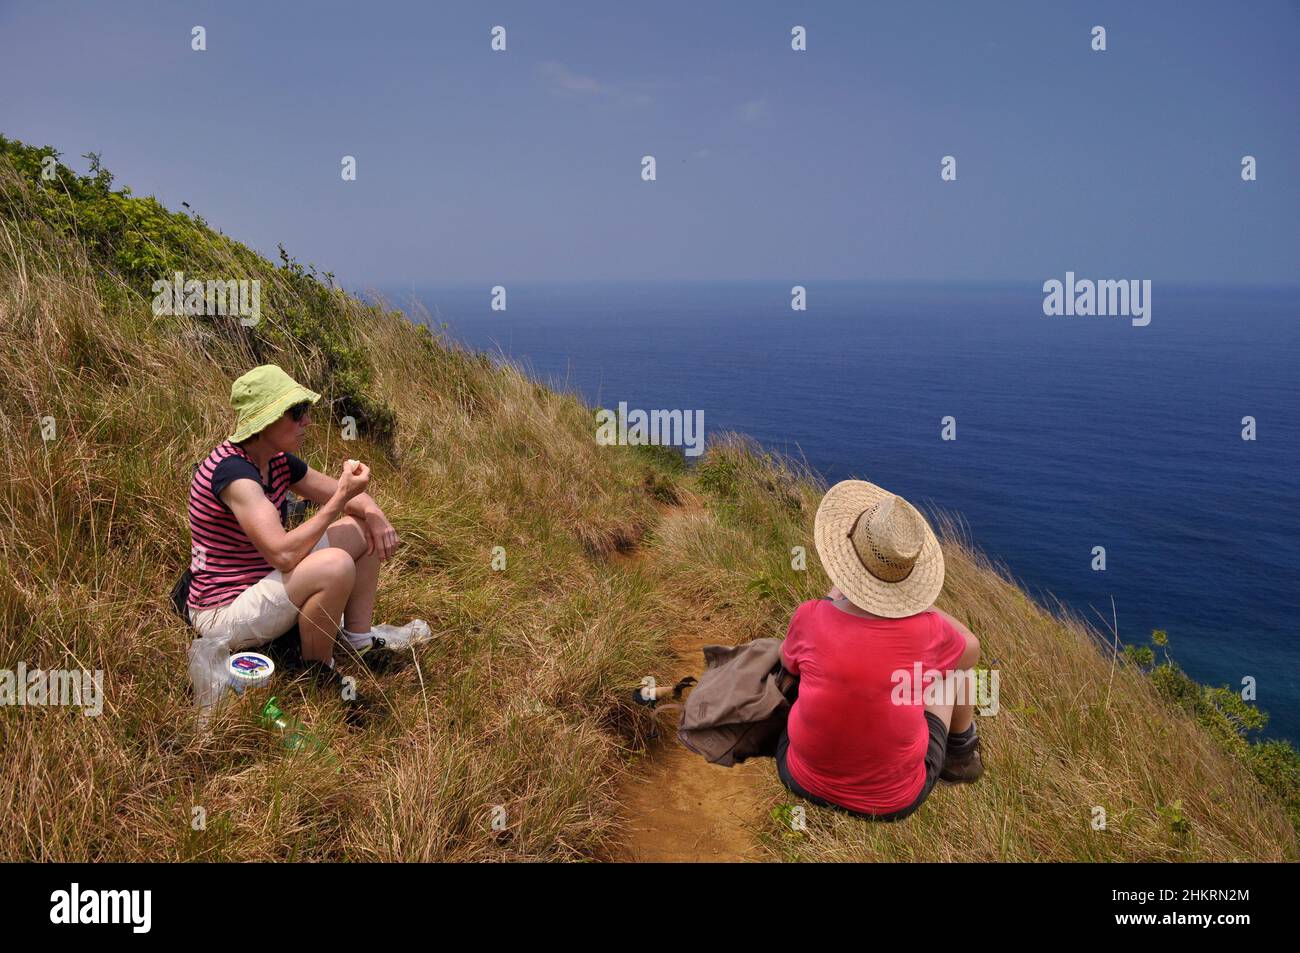 Deux femmes déjeunent au bord de la mer pendant une randonnée, Maui, Hawaii, États-Unis. La pause qui nourrit et rafraîchit, surplombant l'océan, sur une colline. Banque D'Images